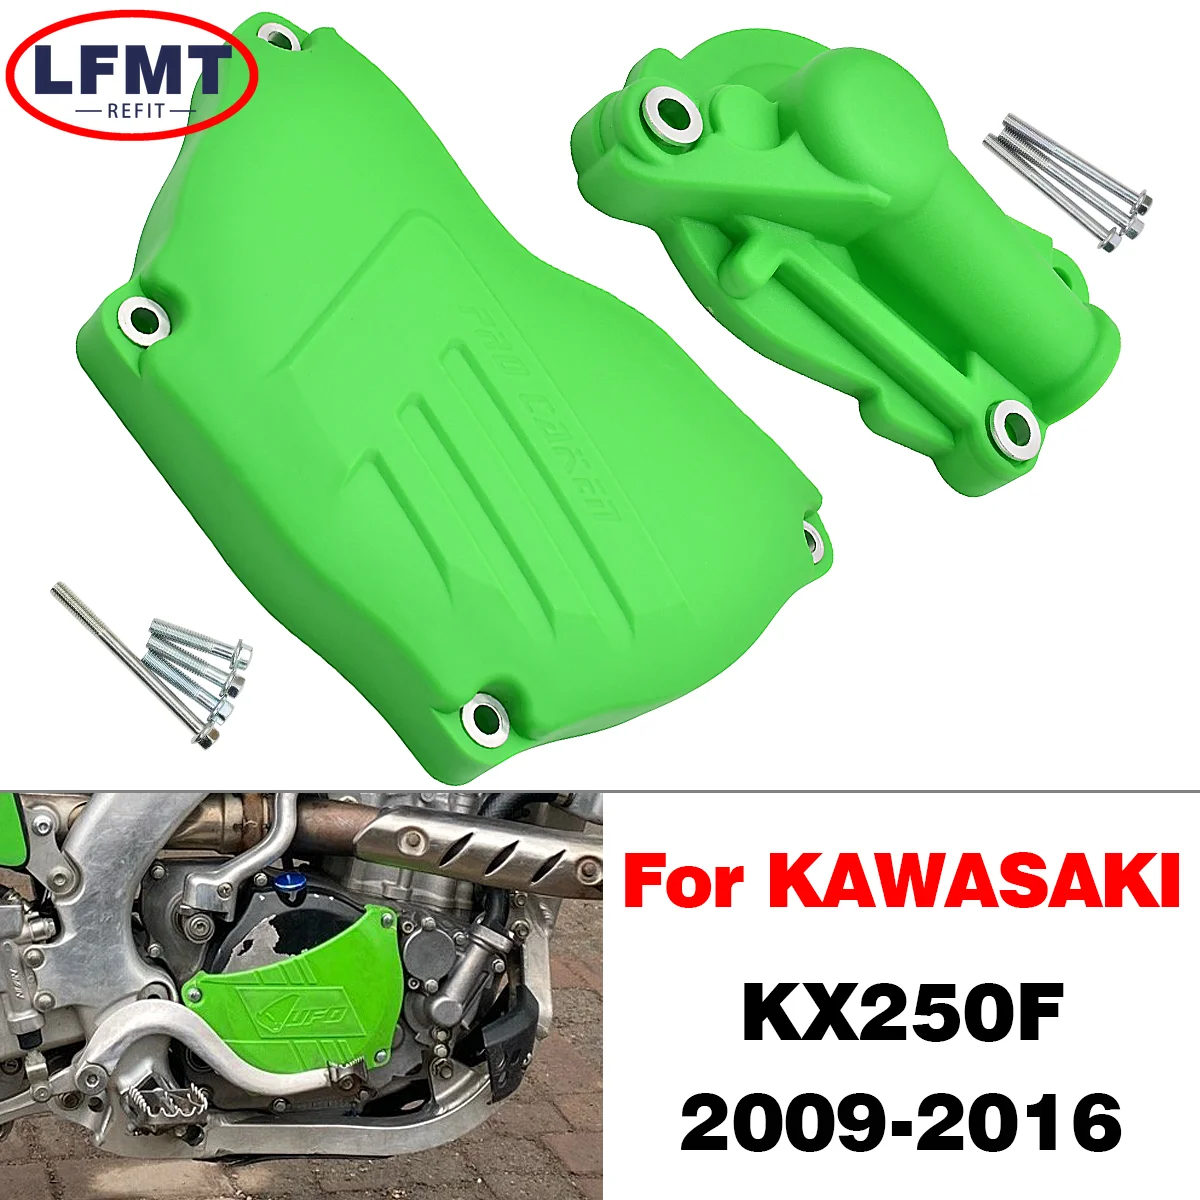 

For Kawasaki KX250F KX 250F KXF250 2009 2010 2011 2012 2013 2014 2015 2016 Dirt Bike Motocross Clutch Guard Water Pump Protector